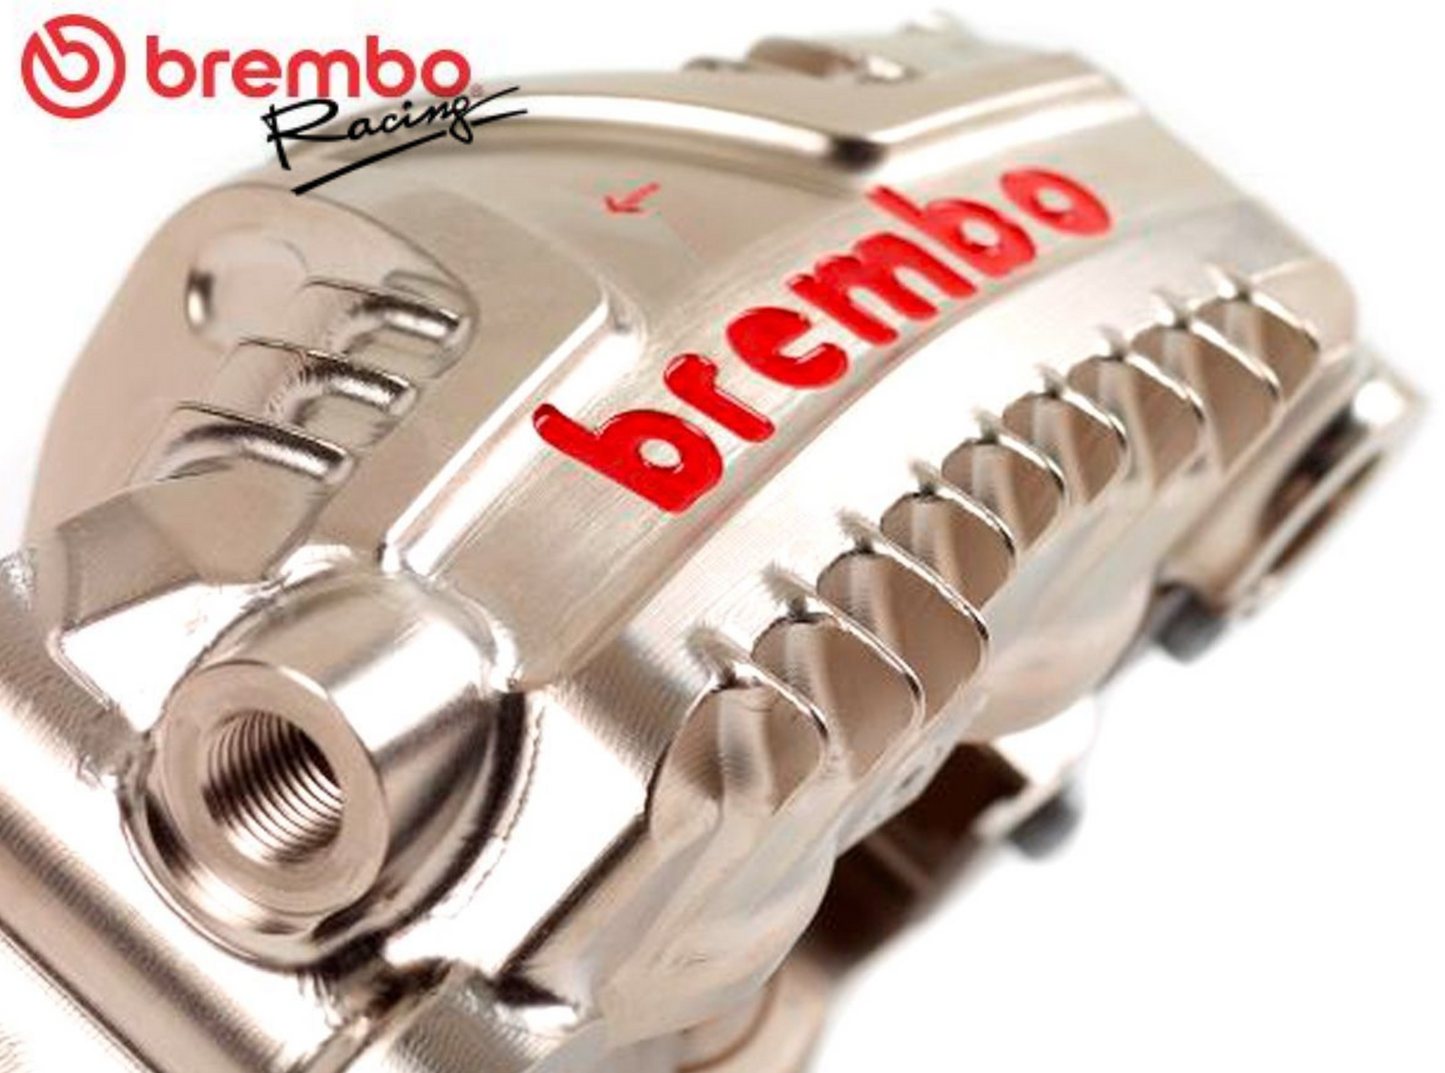 5/1イタリア在庫あり brembo GP4-LM エンデュランス ラジアル モノブロック CNCキャリパー  ニッケルコート 108mmピッチ XC1AB10 XC1AB11 ブレンボ レーシング